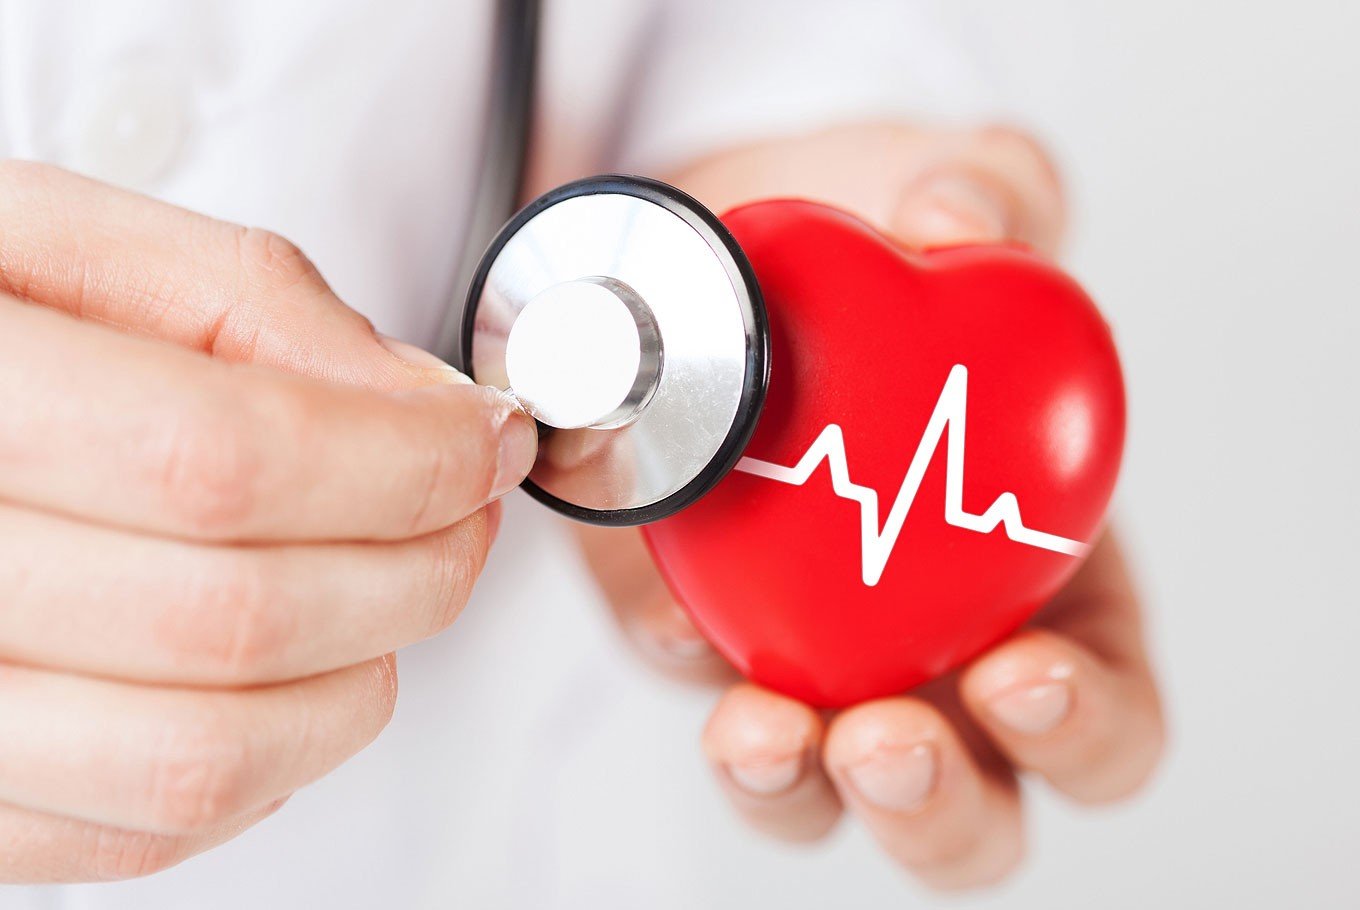 szívbetegségek egészségügyi kockázatai magas vérnyomás testhőmérséklet